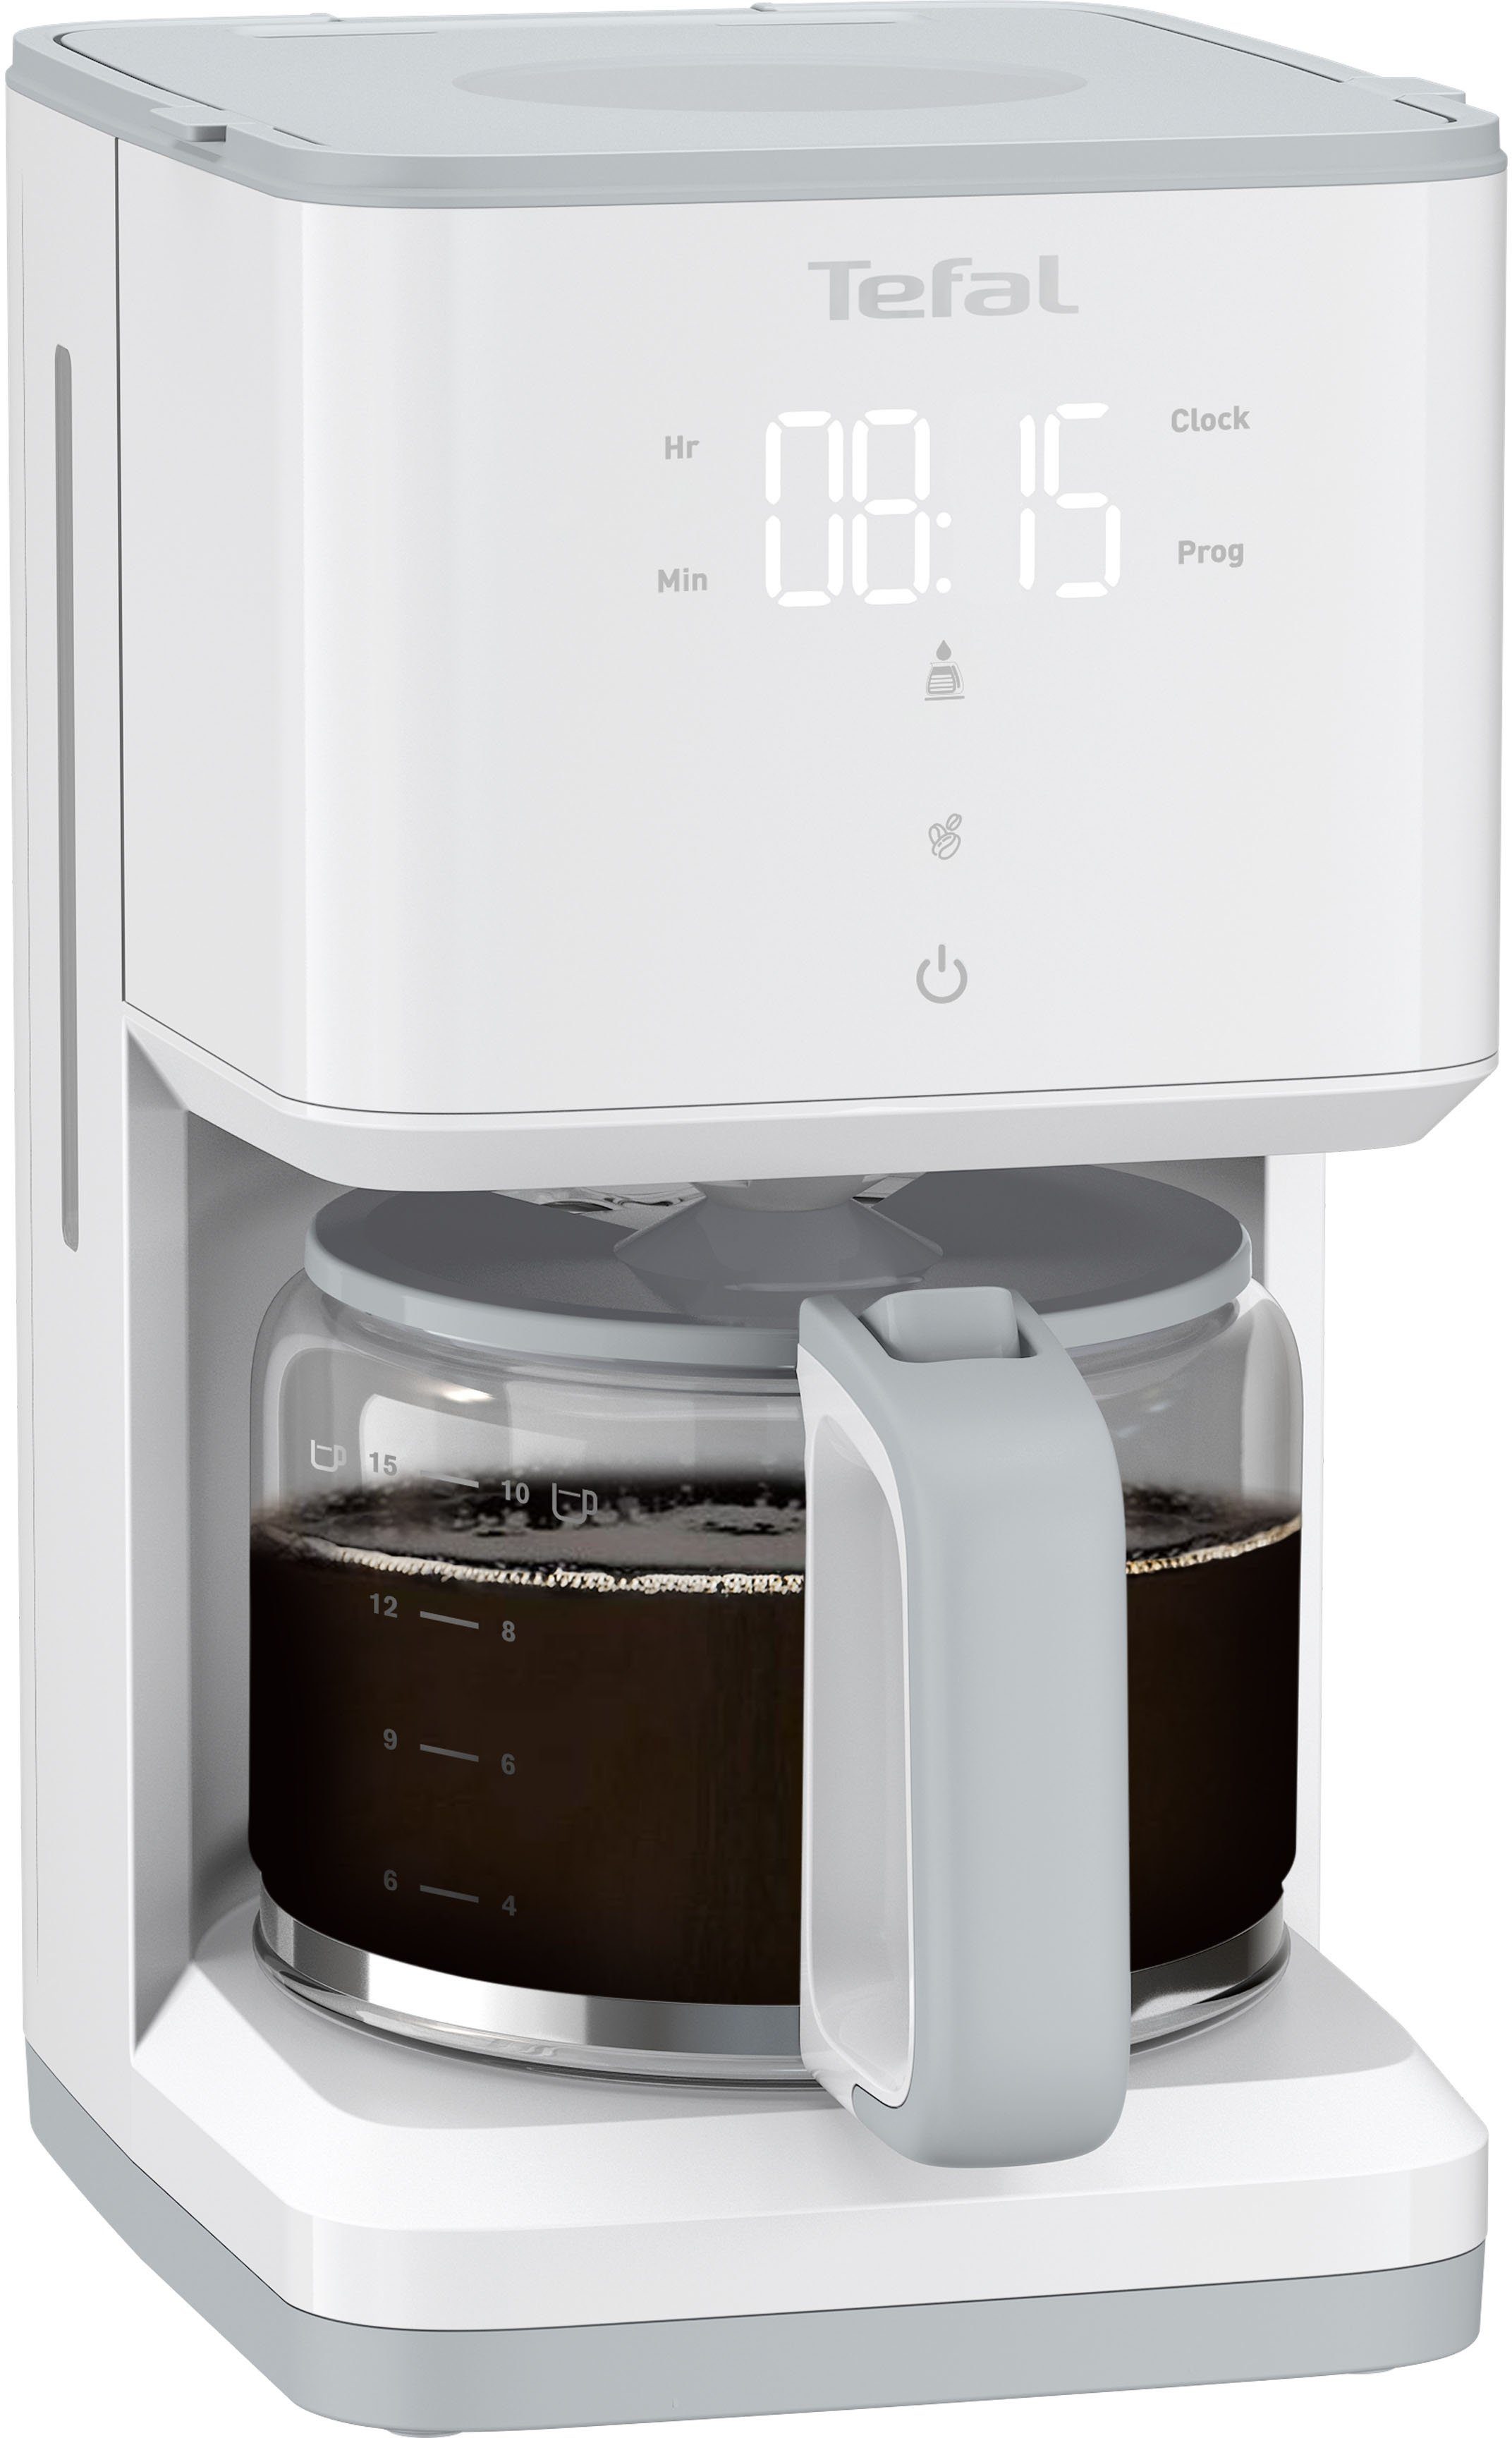 Tefal Filterkaffeemaschine CM6931 Sense, 1,25l Kaffeekanne,  Digital-Anzeige, Sensor-Touch Steuerung, Glaskanne mit Deckel, Kapazität  für 10 bis 15 Tassen, weiß online kaufen | OTTO